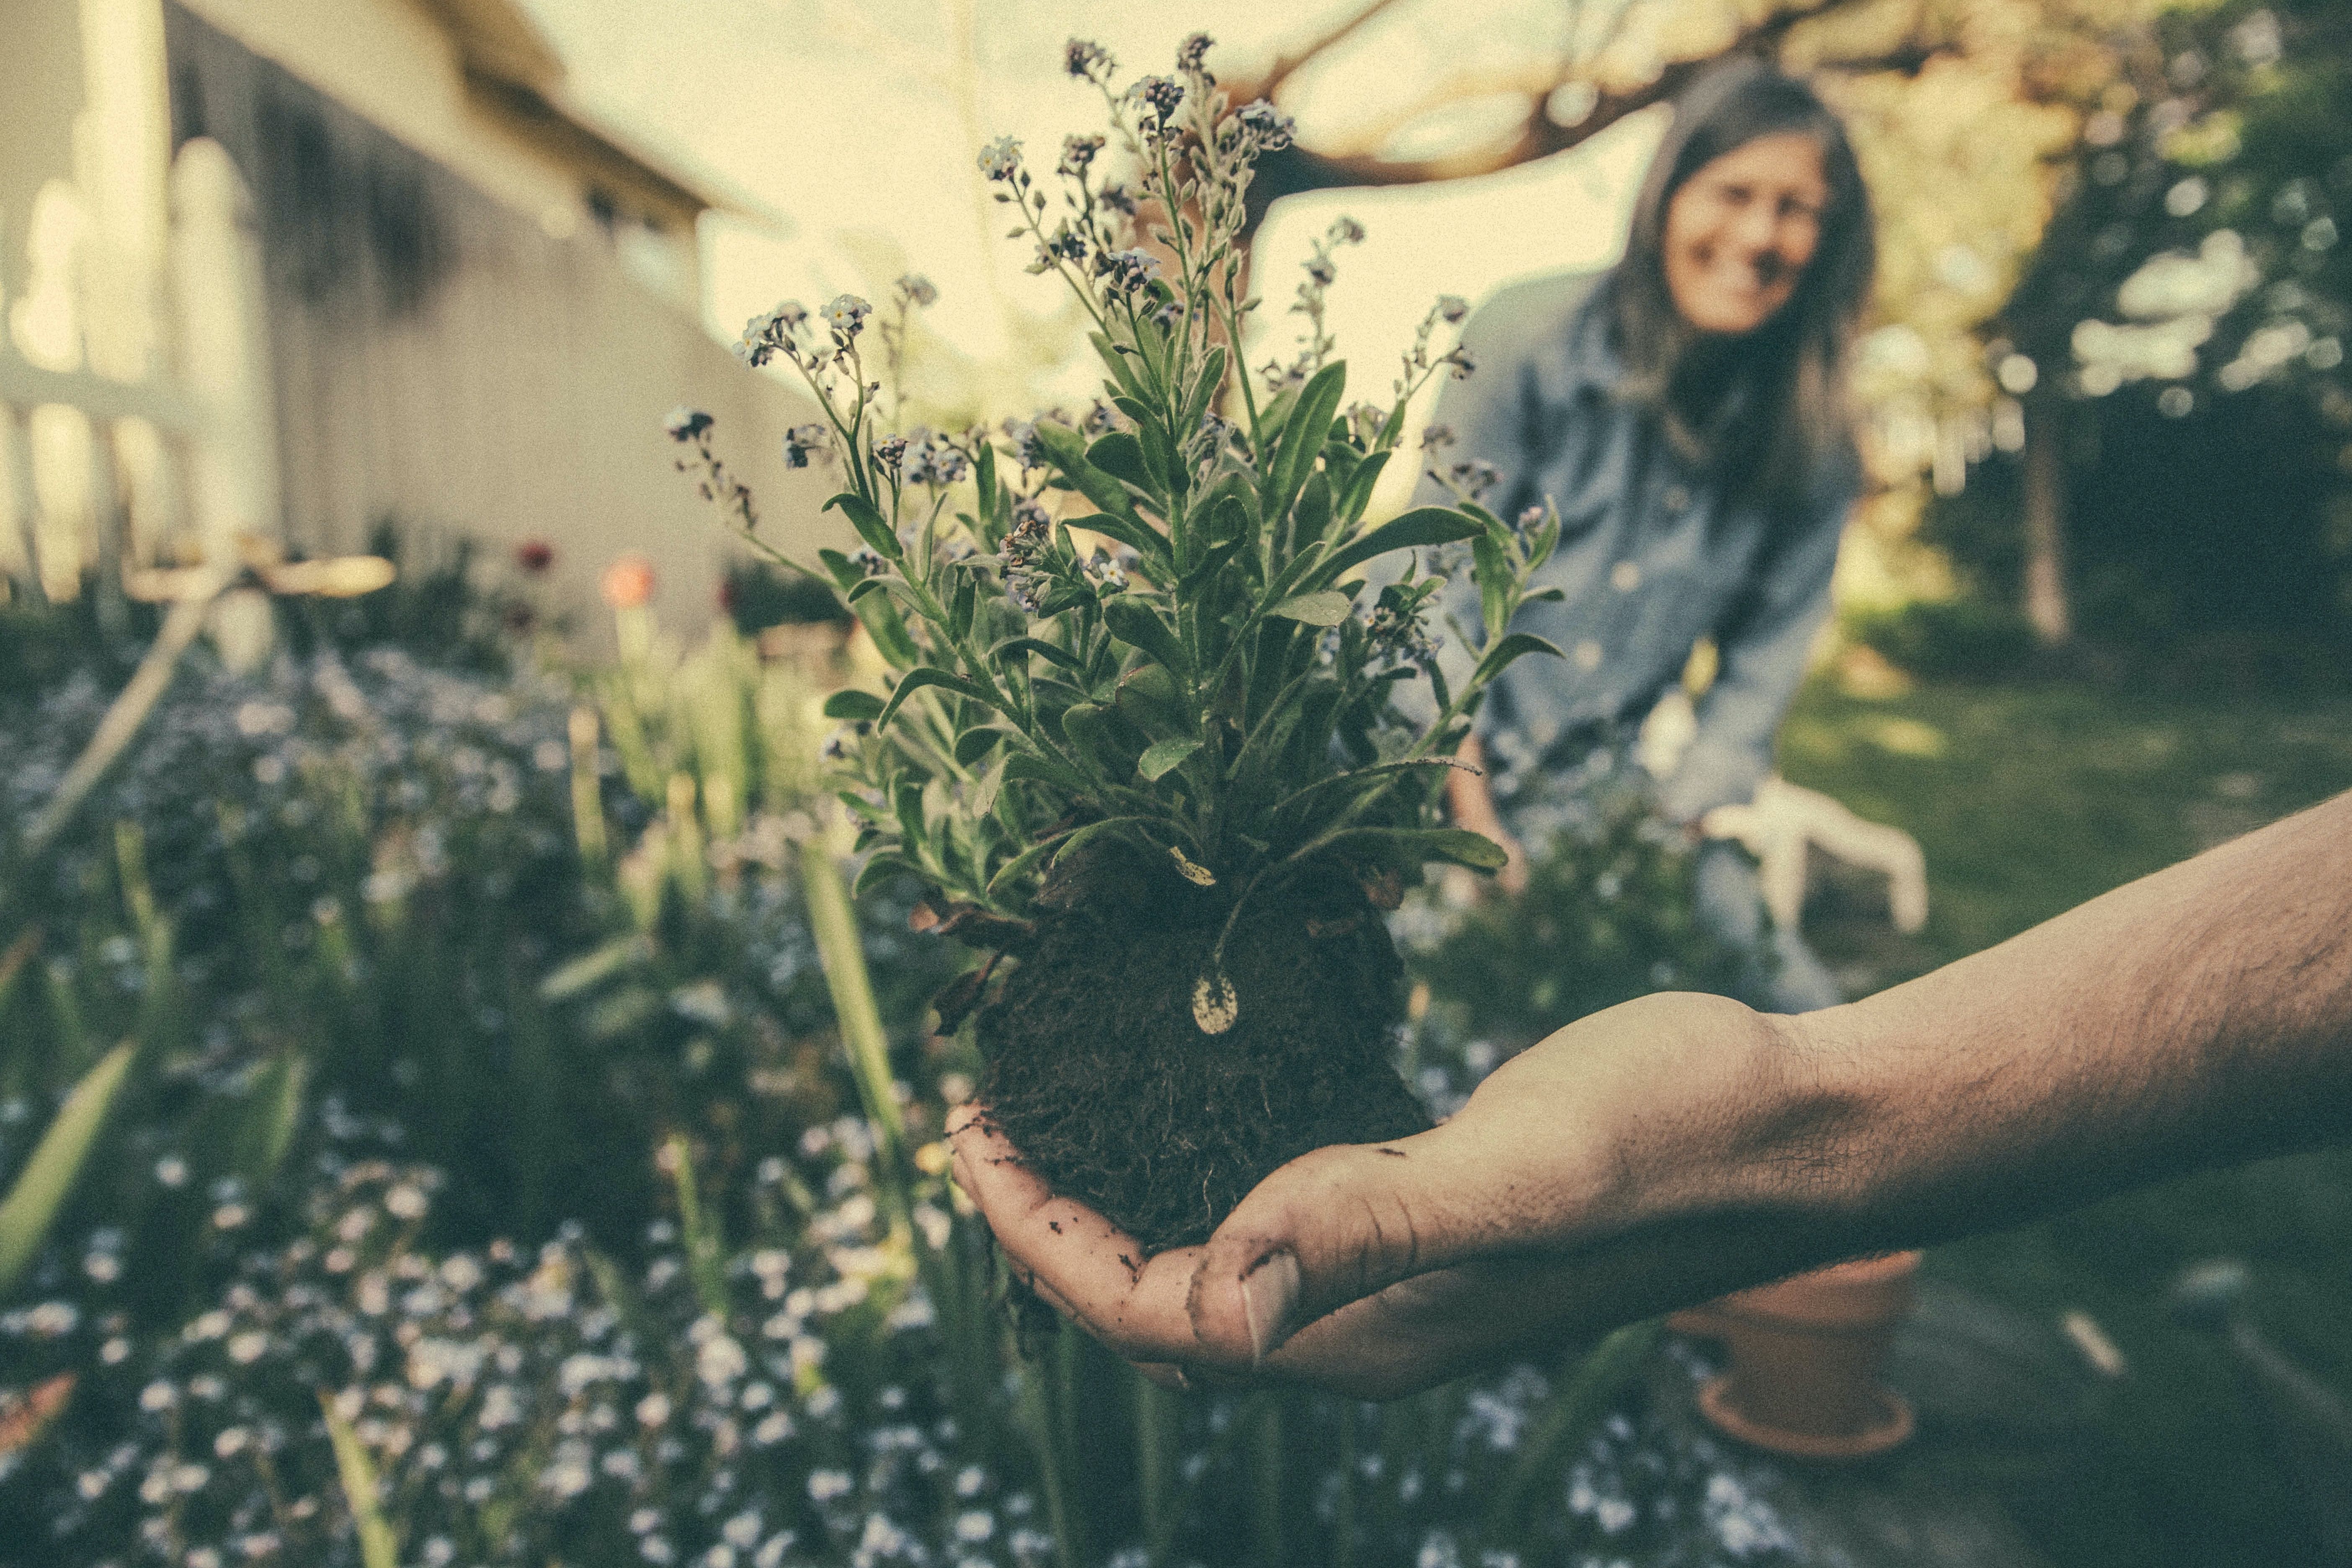 Les 4 vertus du jardinage pour les retraités